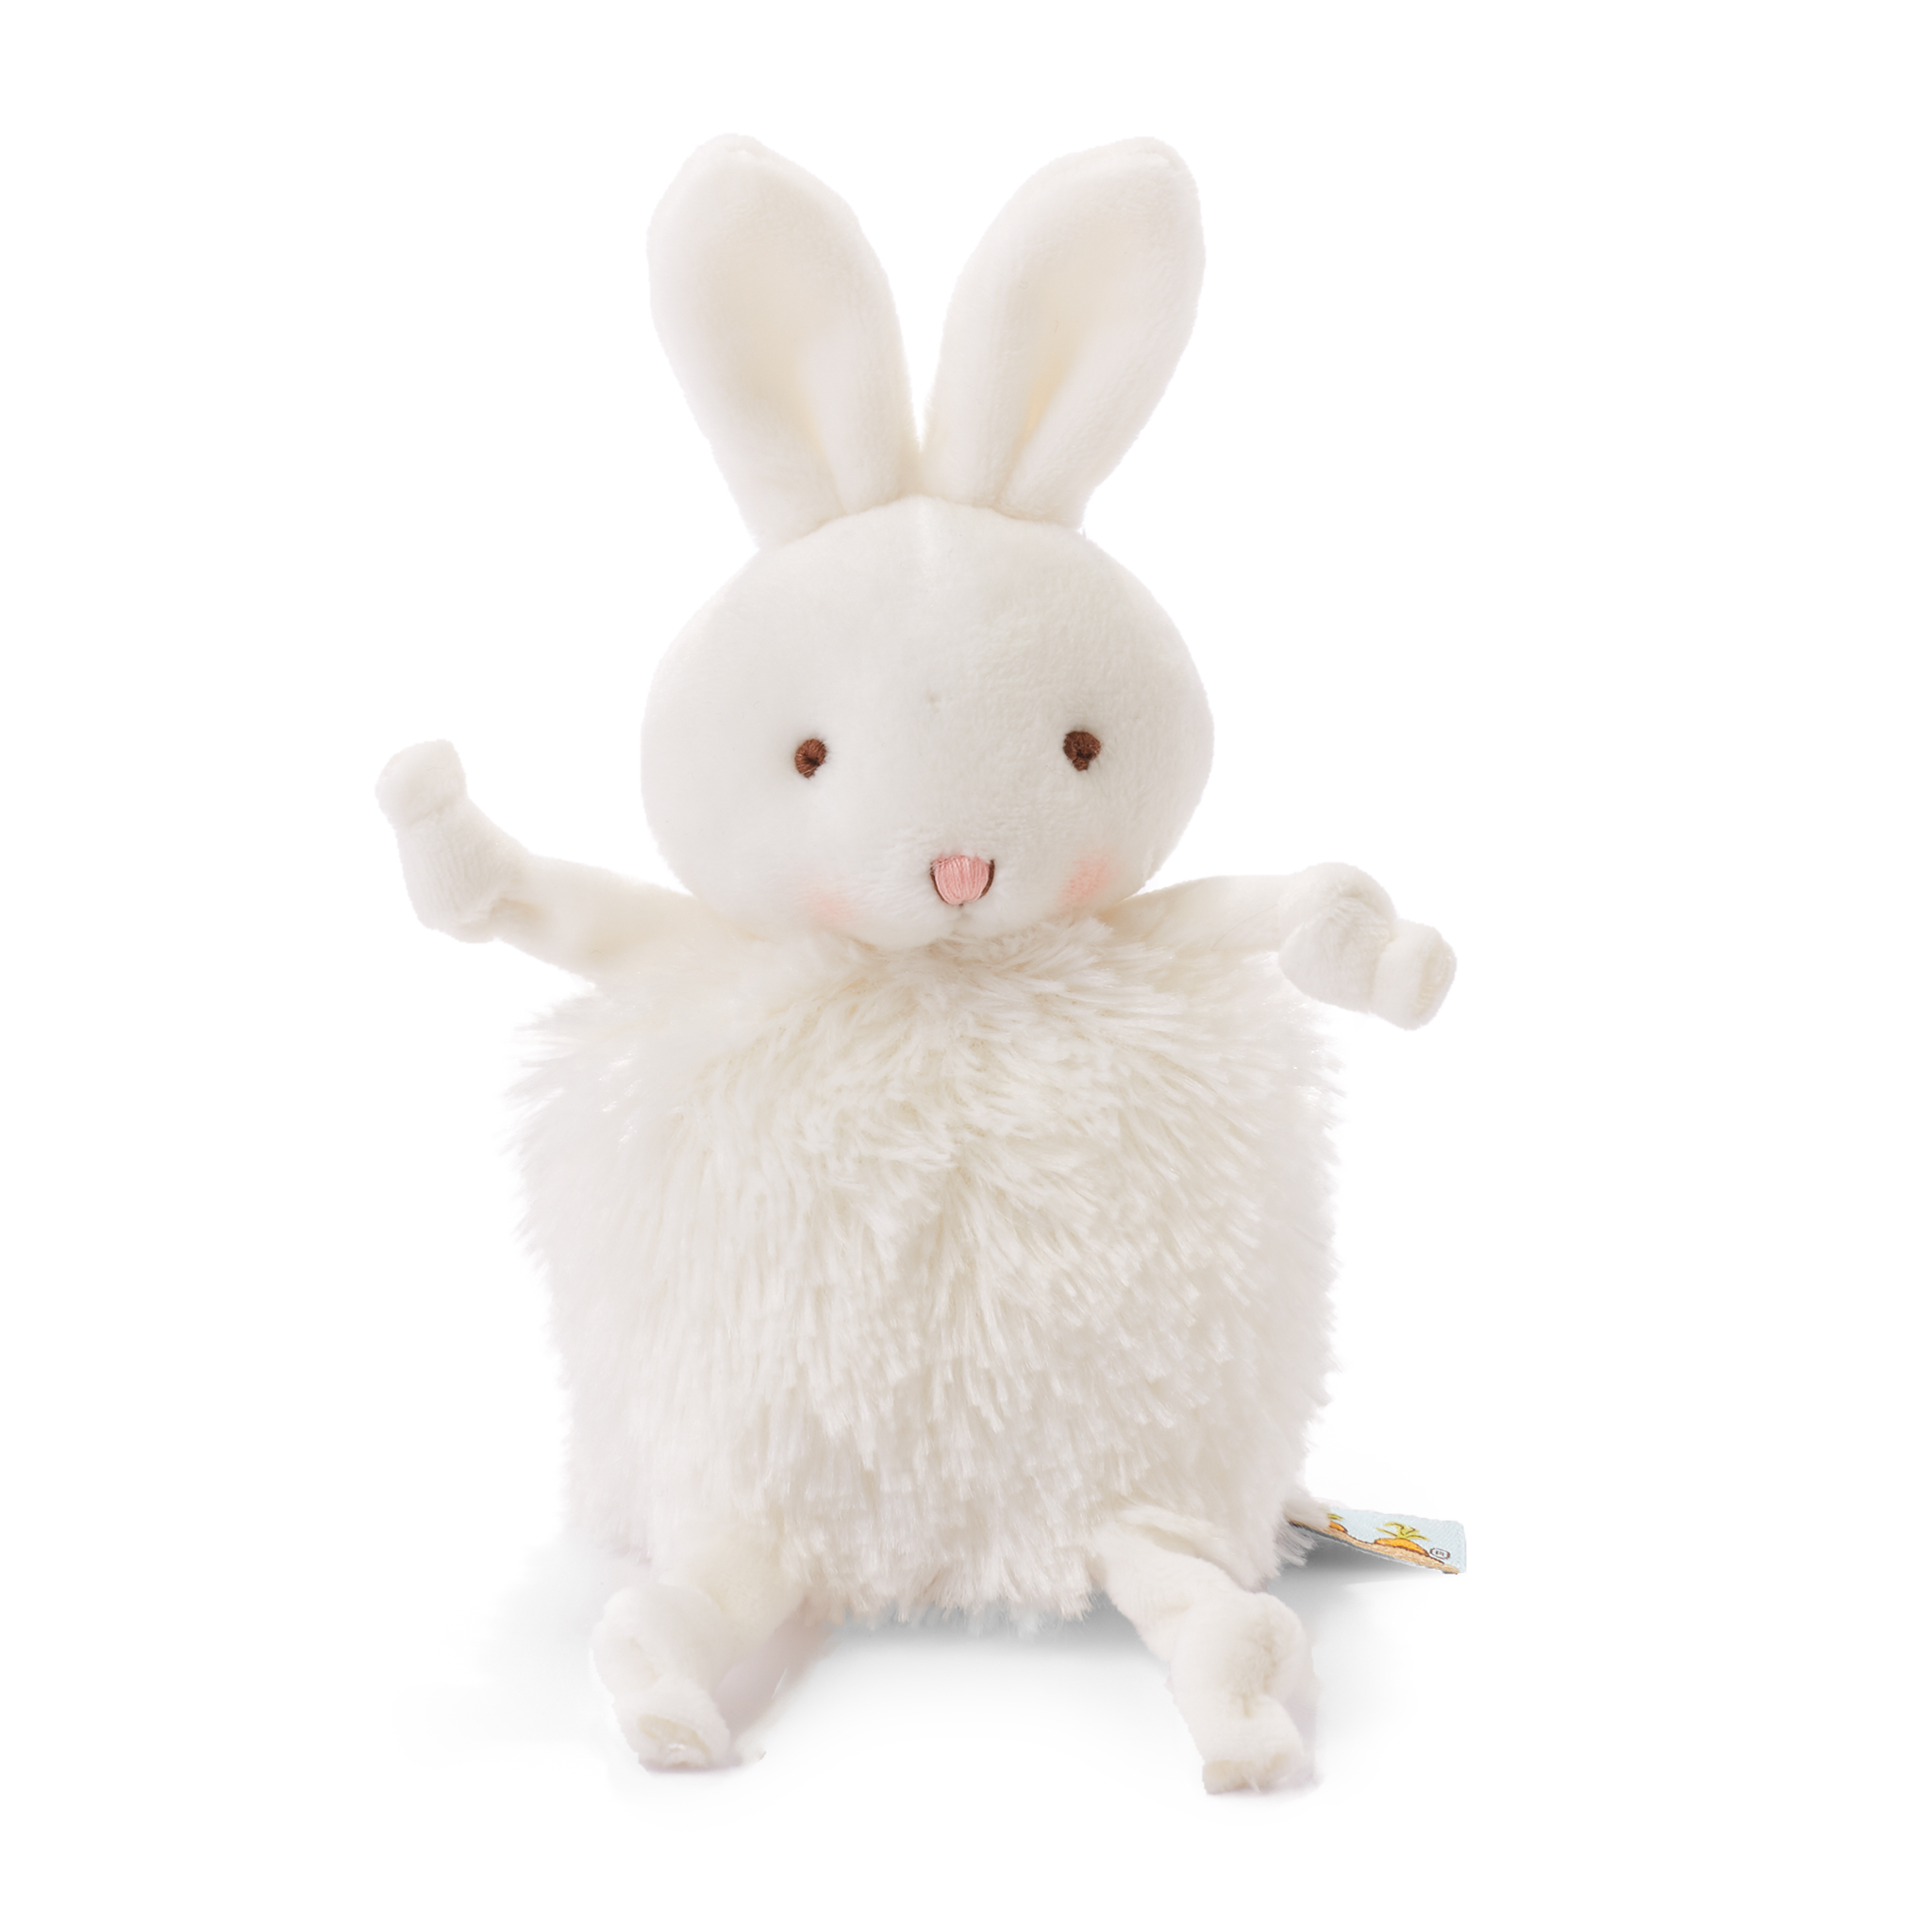 Roly-poly knuffel konijn - wit